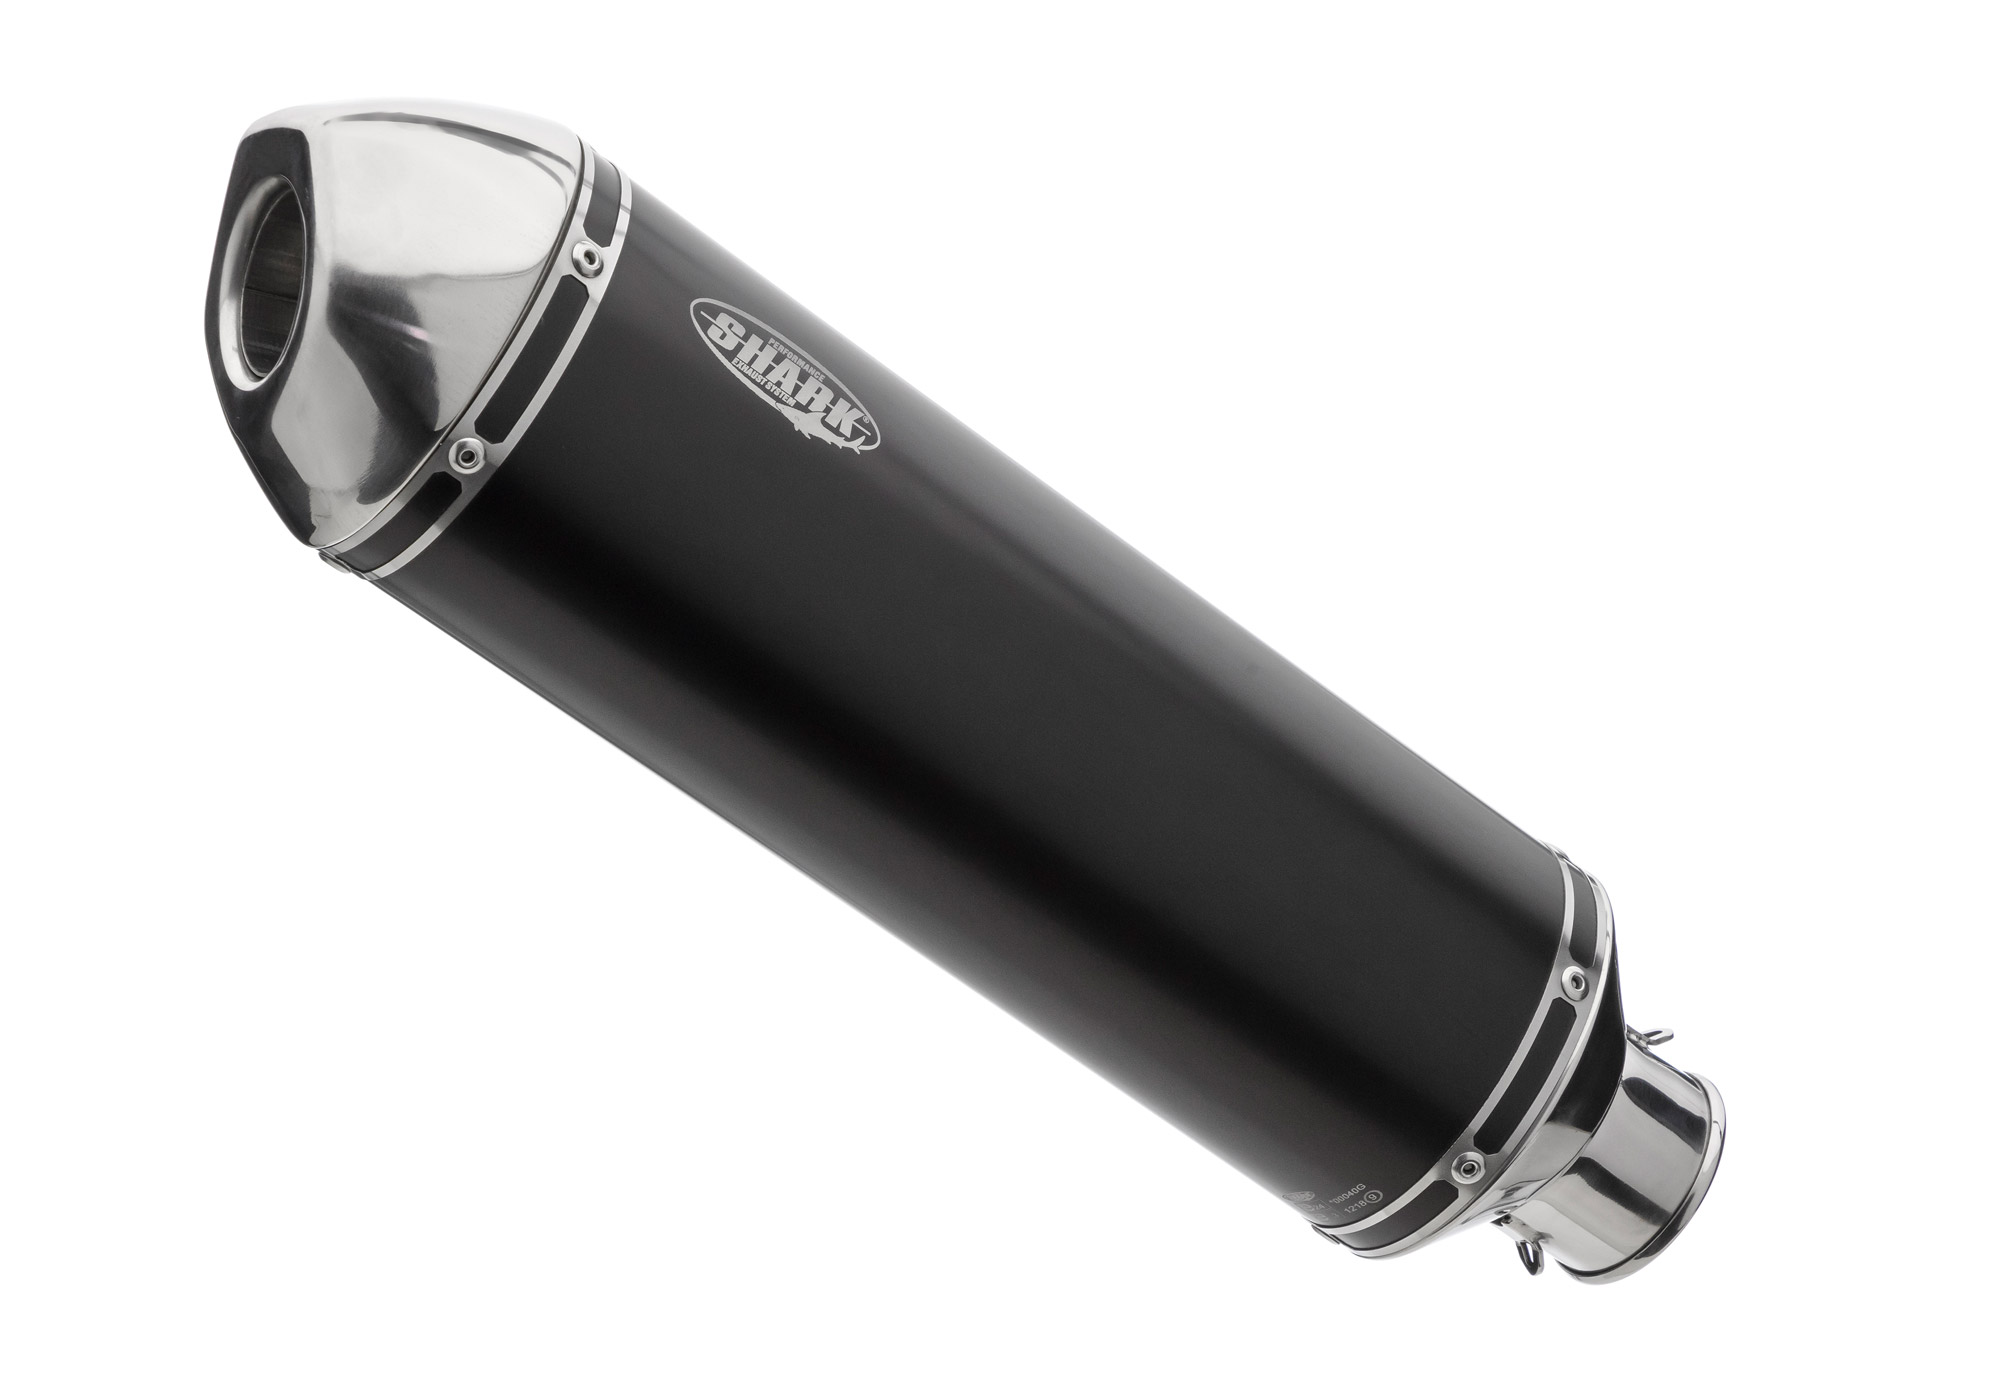 Image of SHARK EXHAUST DSX-5 alluminio eloxed/tappo finale lucido acciaio inossidabile nero, nero